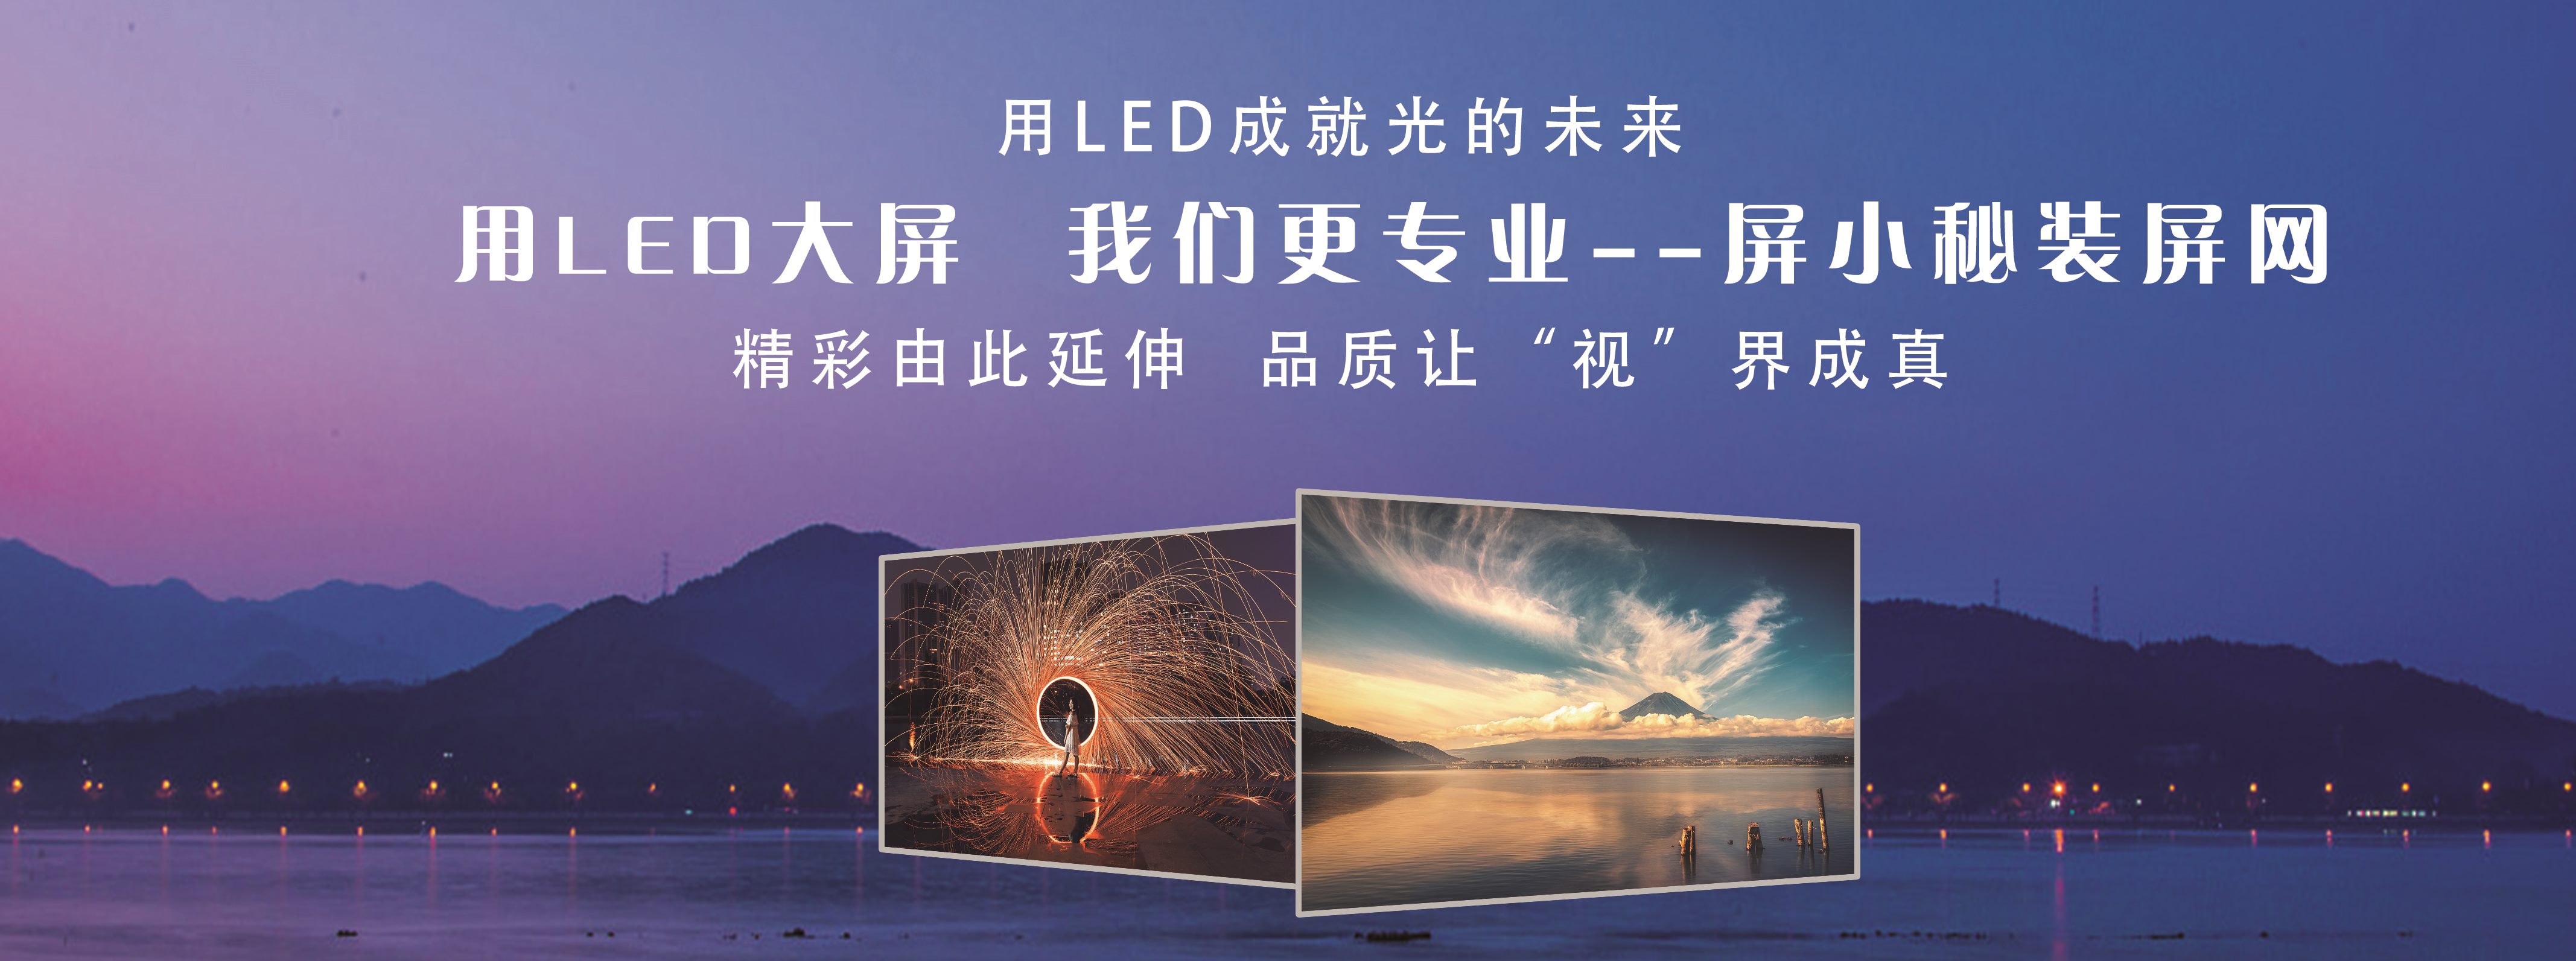 武漢LED廣告屏